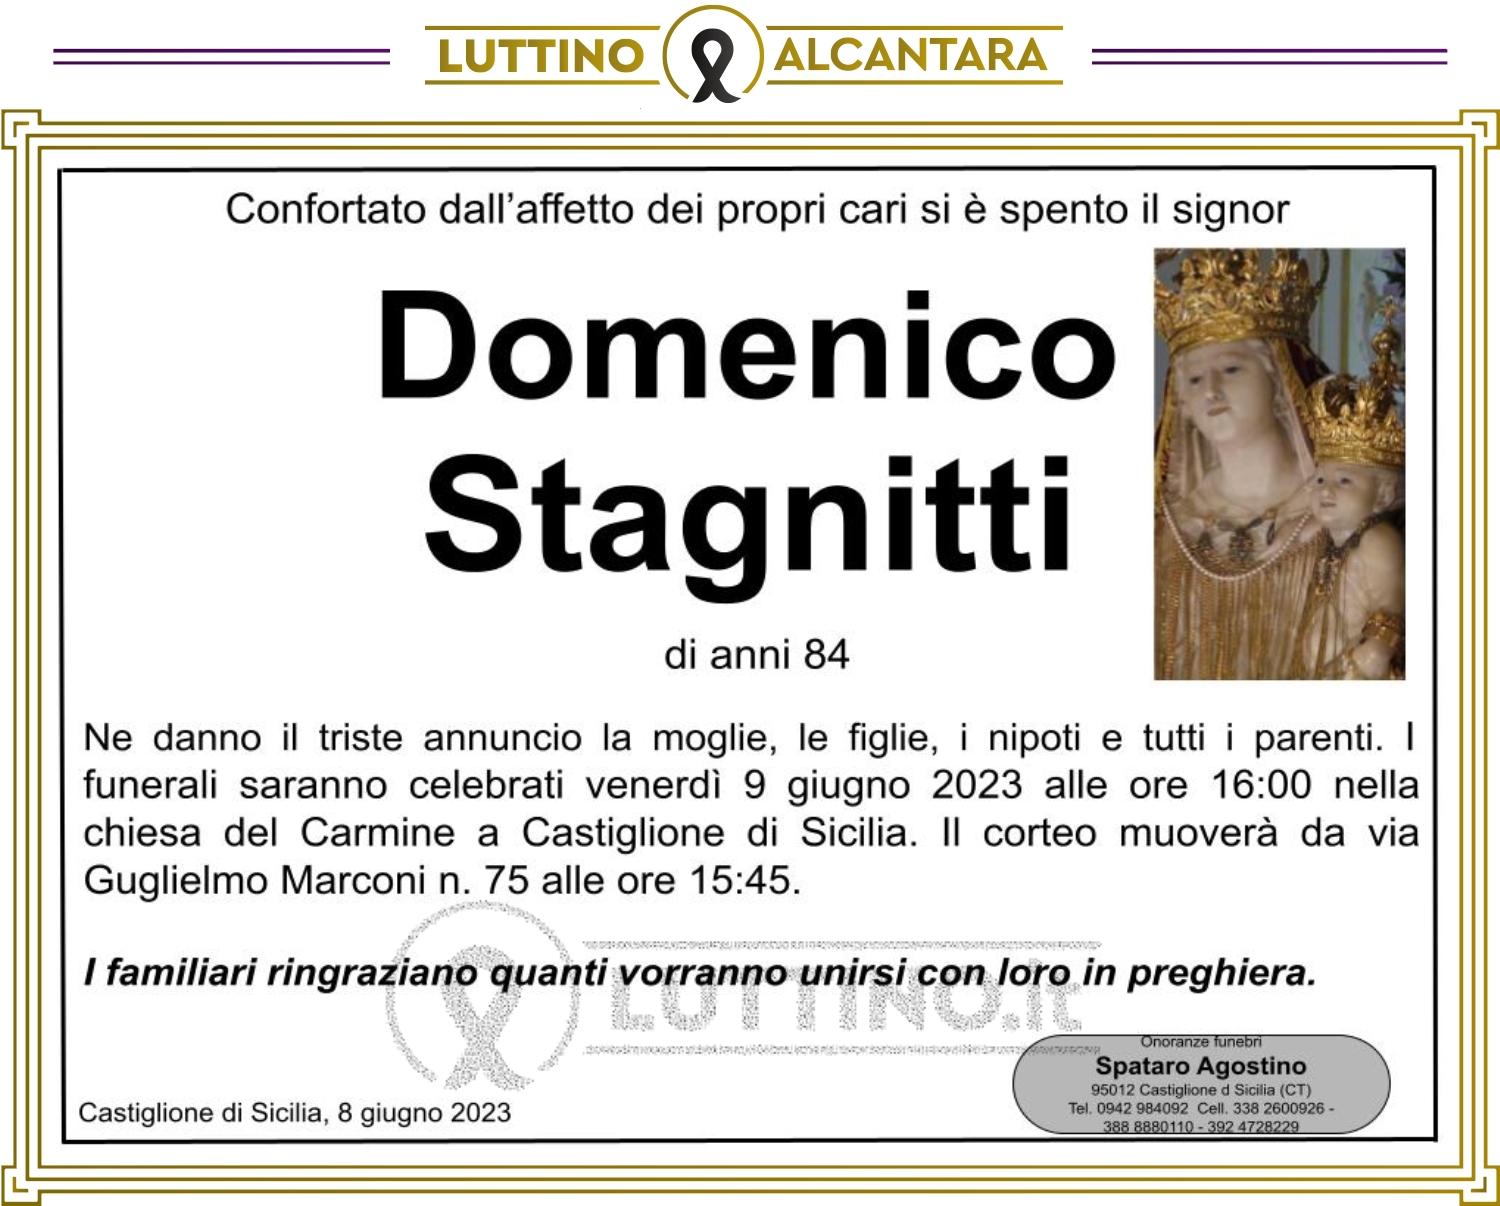 Domenico Stagnitti